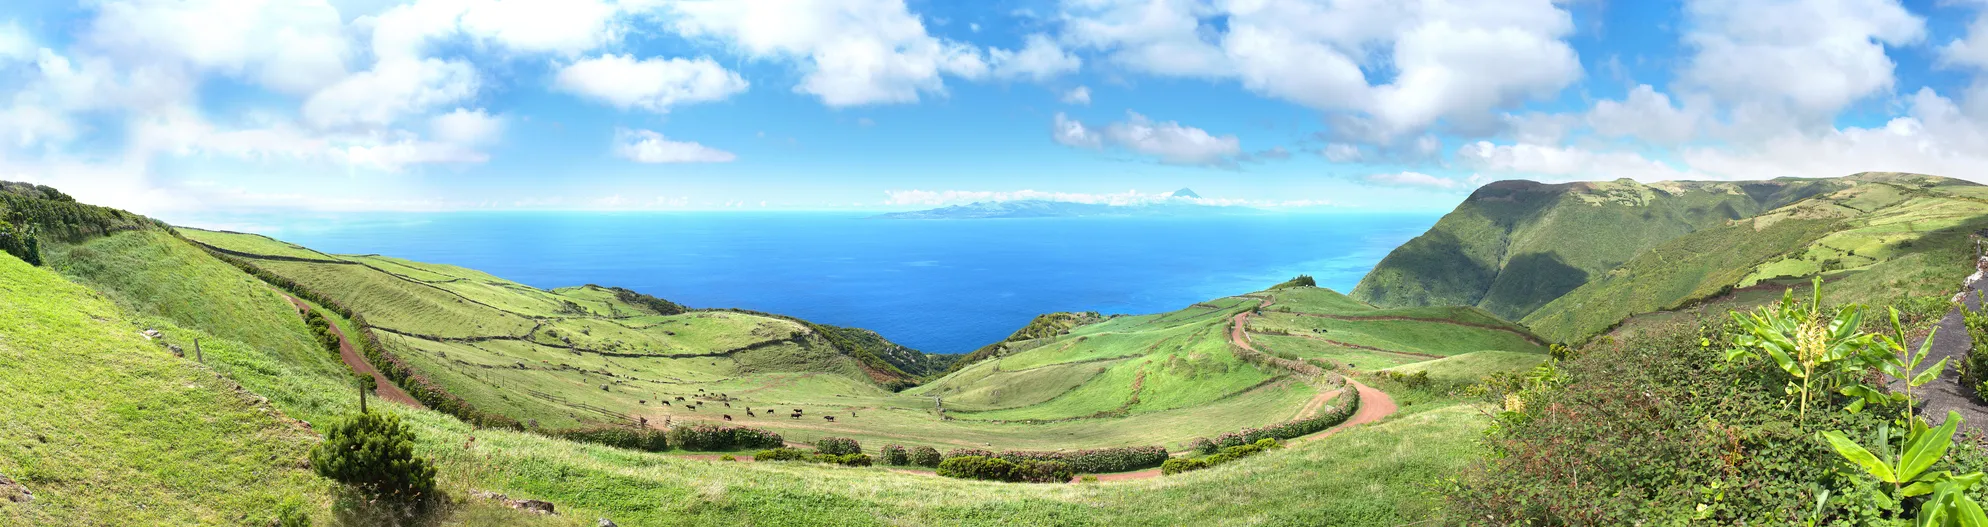 La campagne de l'île de São Jorge aux Açores © iStock / Rich Higgins